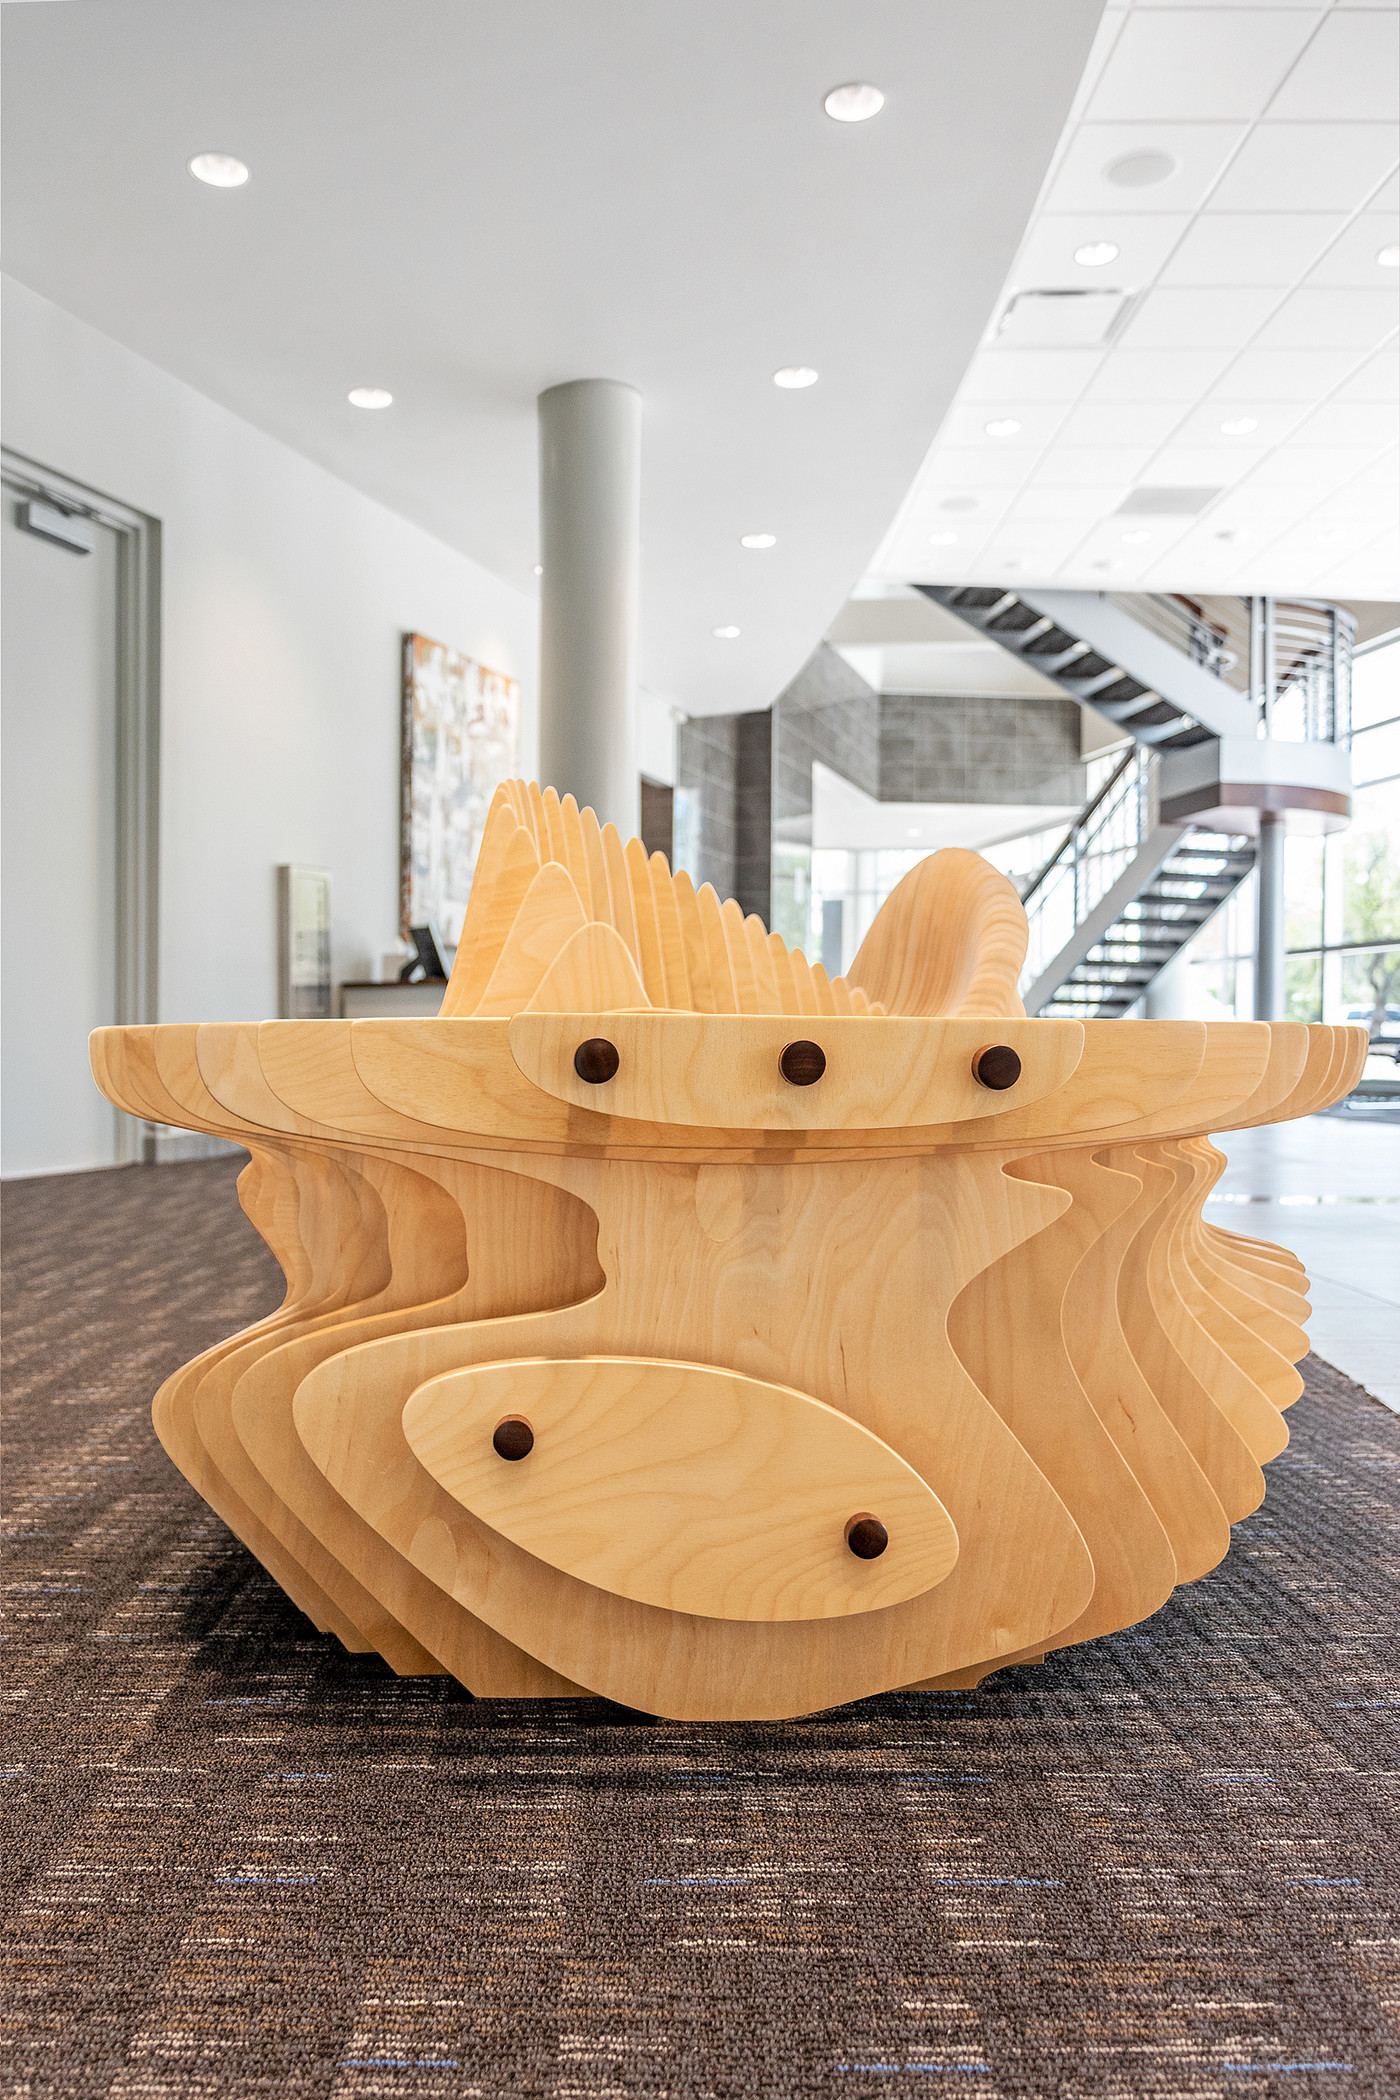 木质镂空异形休闲椅家具设计欣赏-03